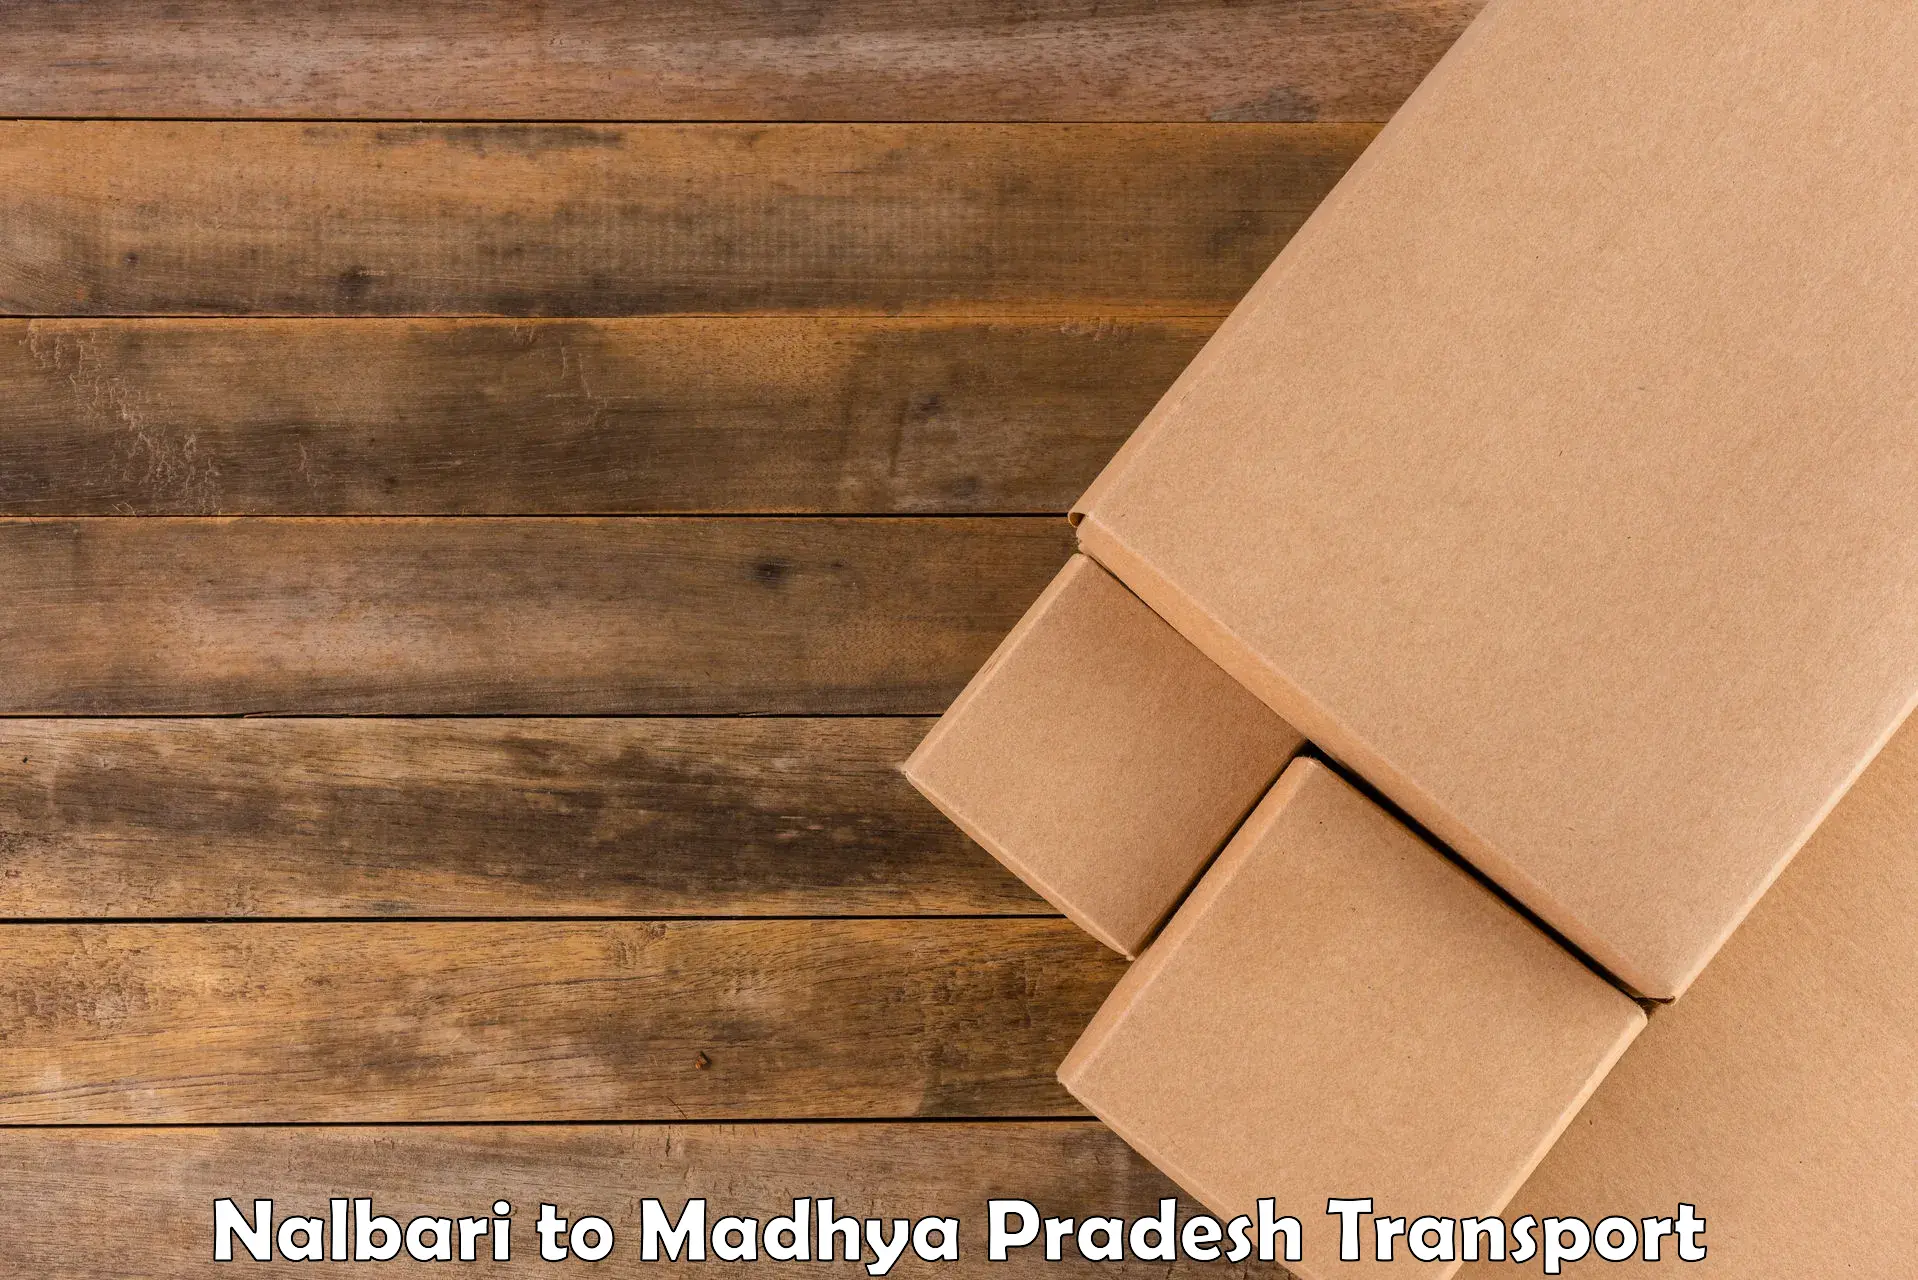 Truck transport companies in India Nalbari to Waraseoni